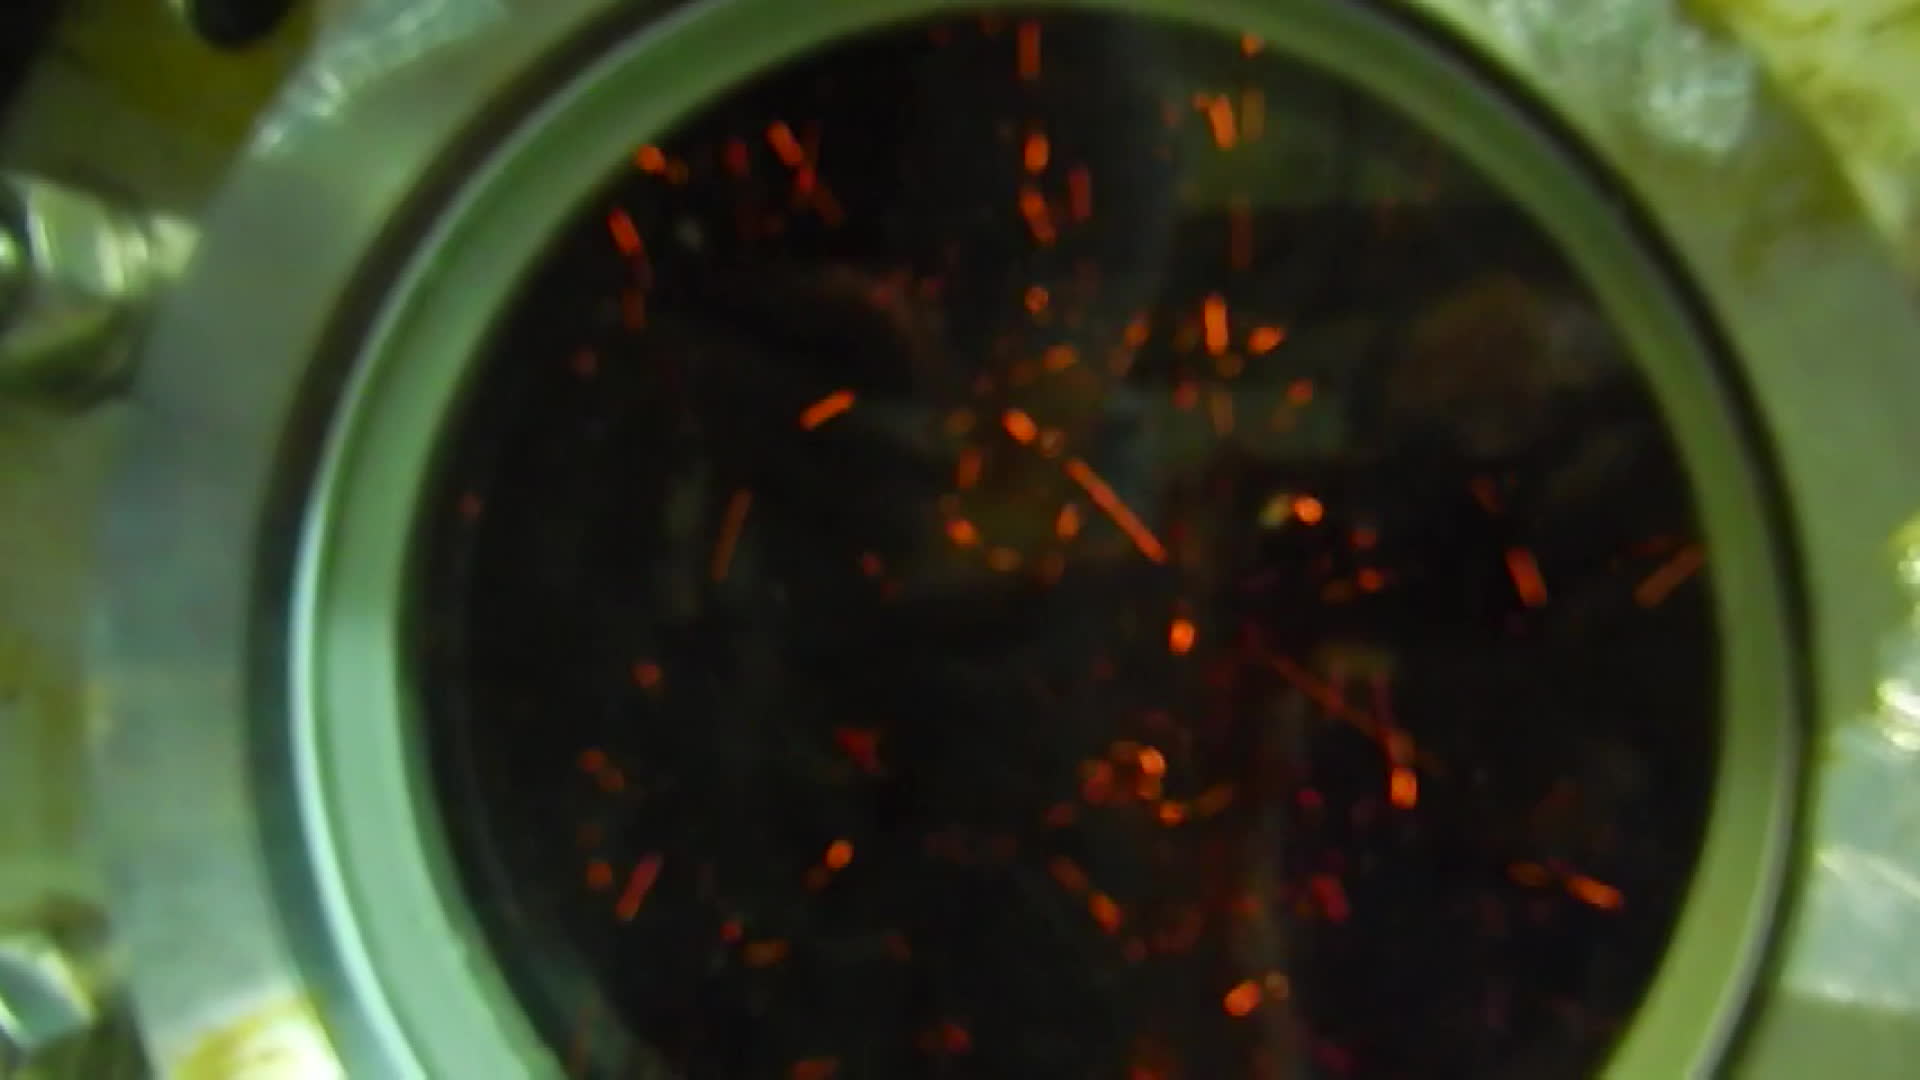  2018년 독일 업체 실험 영상, 촉매가 손상돼 불티가 날아다니는 모습 